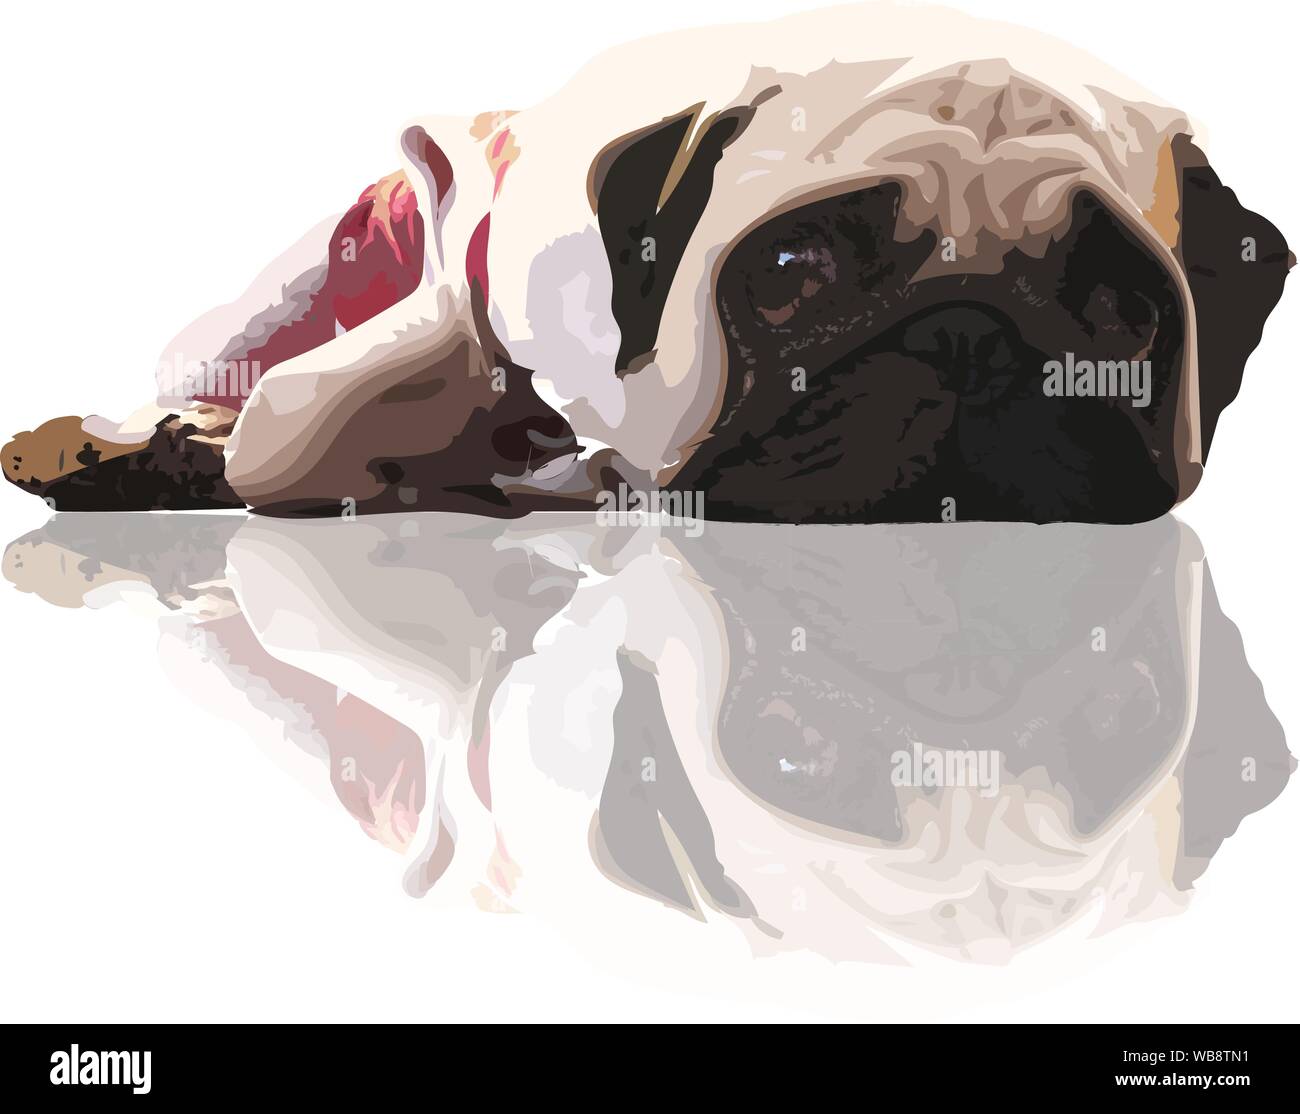 Traurige Gesicht von Mops Hund gerade starrt, Illustration Vektorgrafik pop art auf weißem Hintergrund - PET-Vektor Zeichnung Konzept Stock Vektor